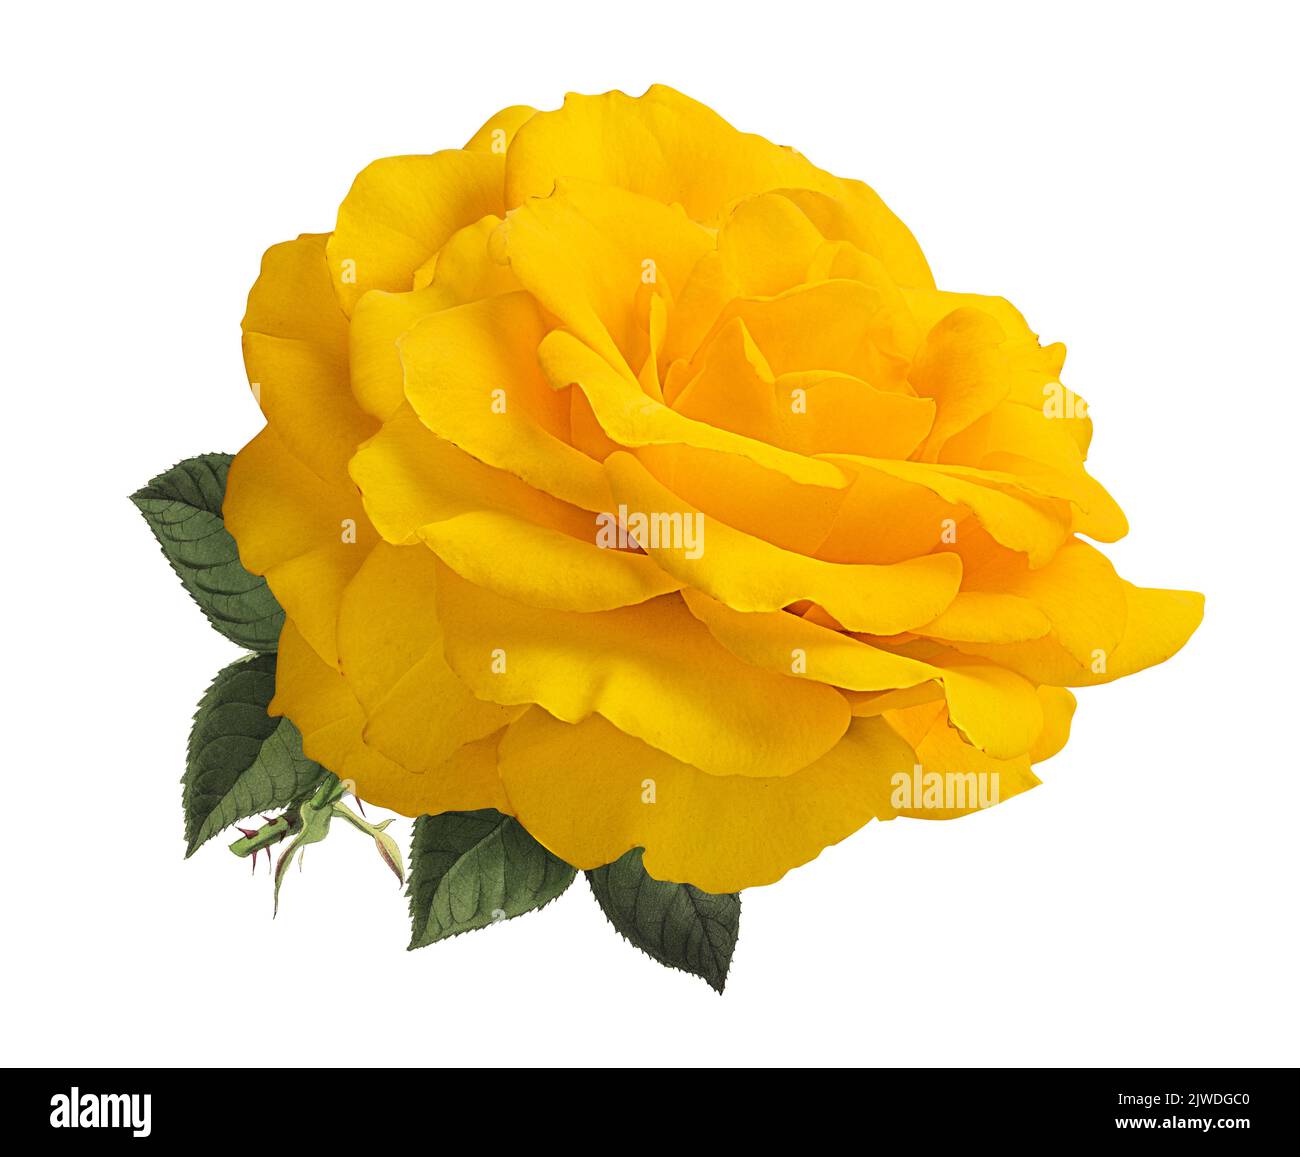 Roses isolated on white background Stock Photo